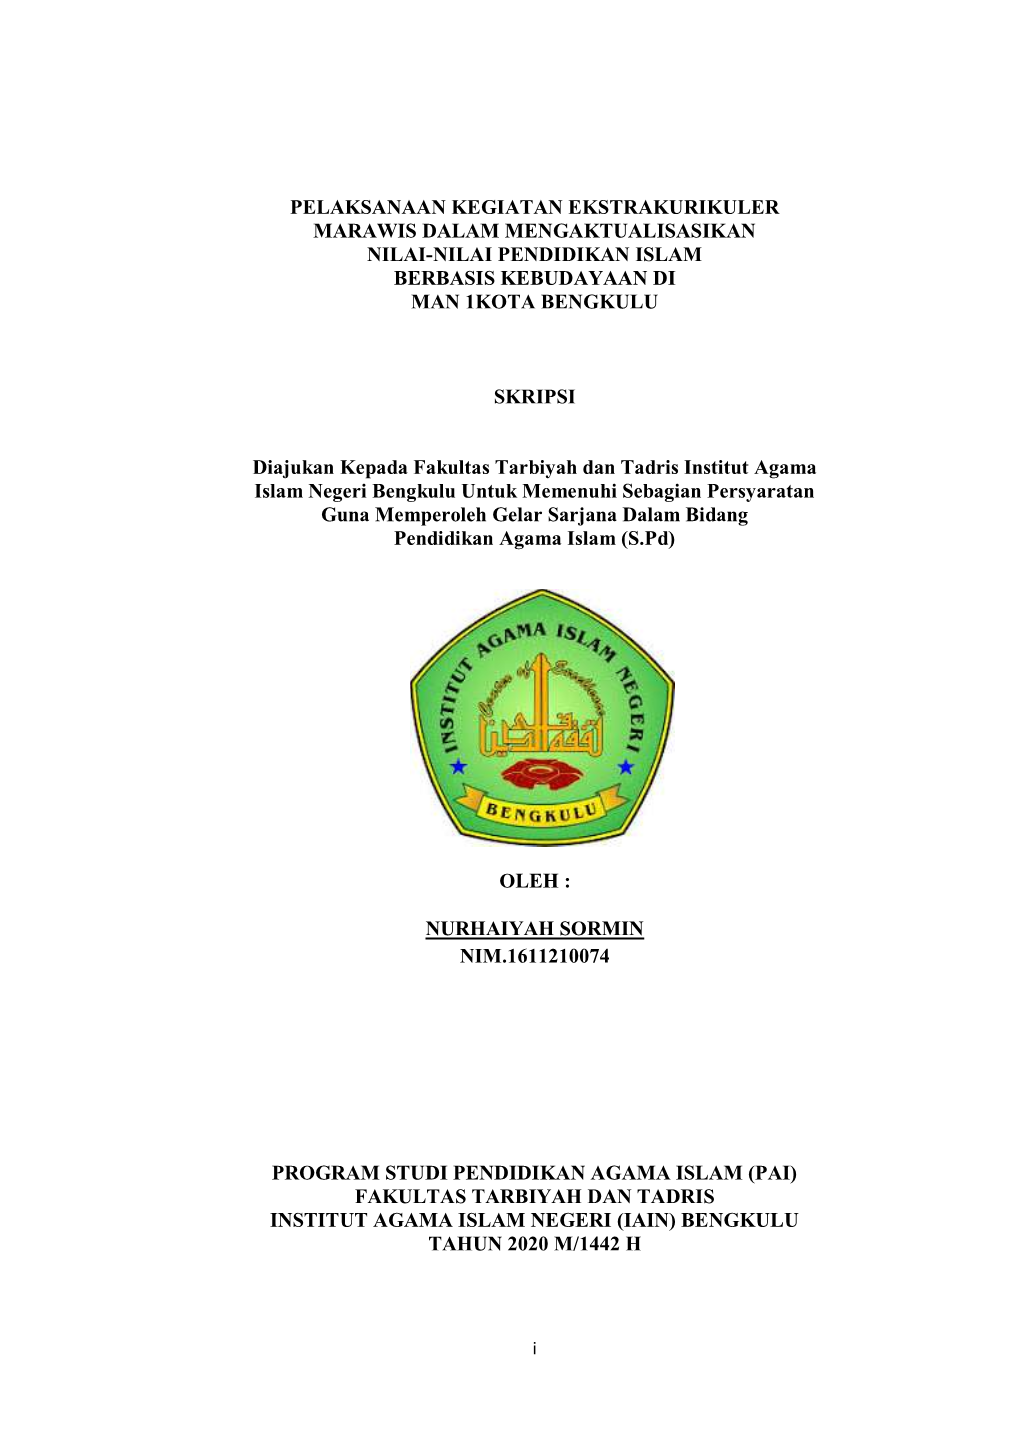 Pelaksanaan Kegiatan Ekstrakurikuler Marawis Dalam Mengaktualisasikan Nilai-Nilai Pendidikan Islam Berbasis Kebudayaan Di Man 1Kota Bengkulu